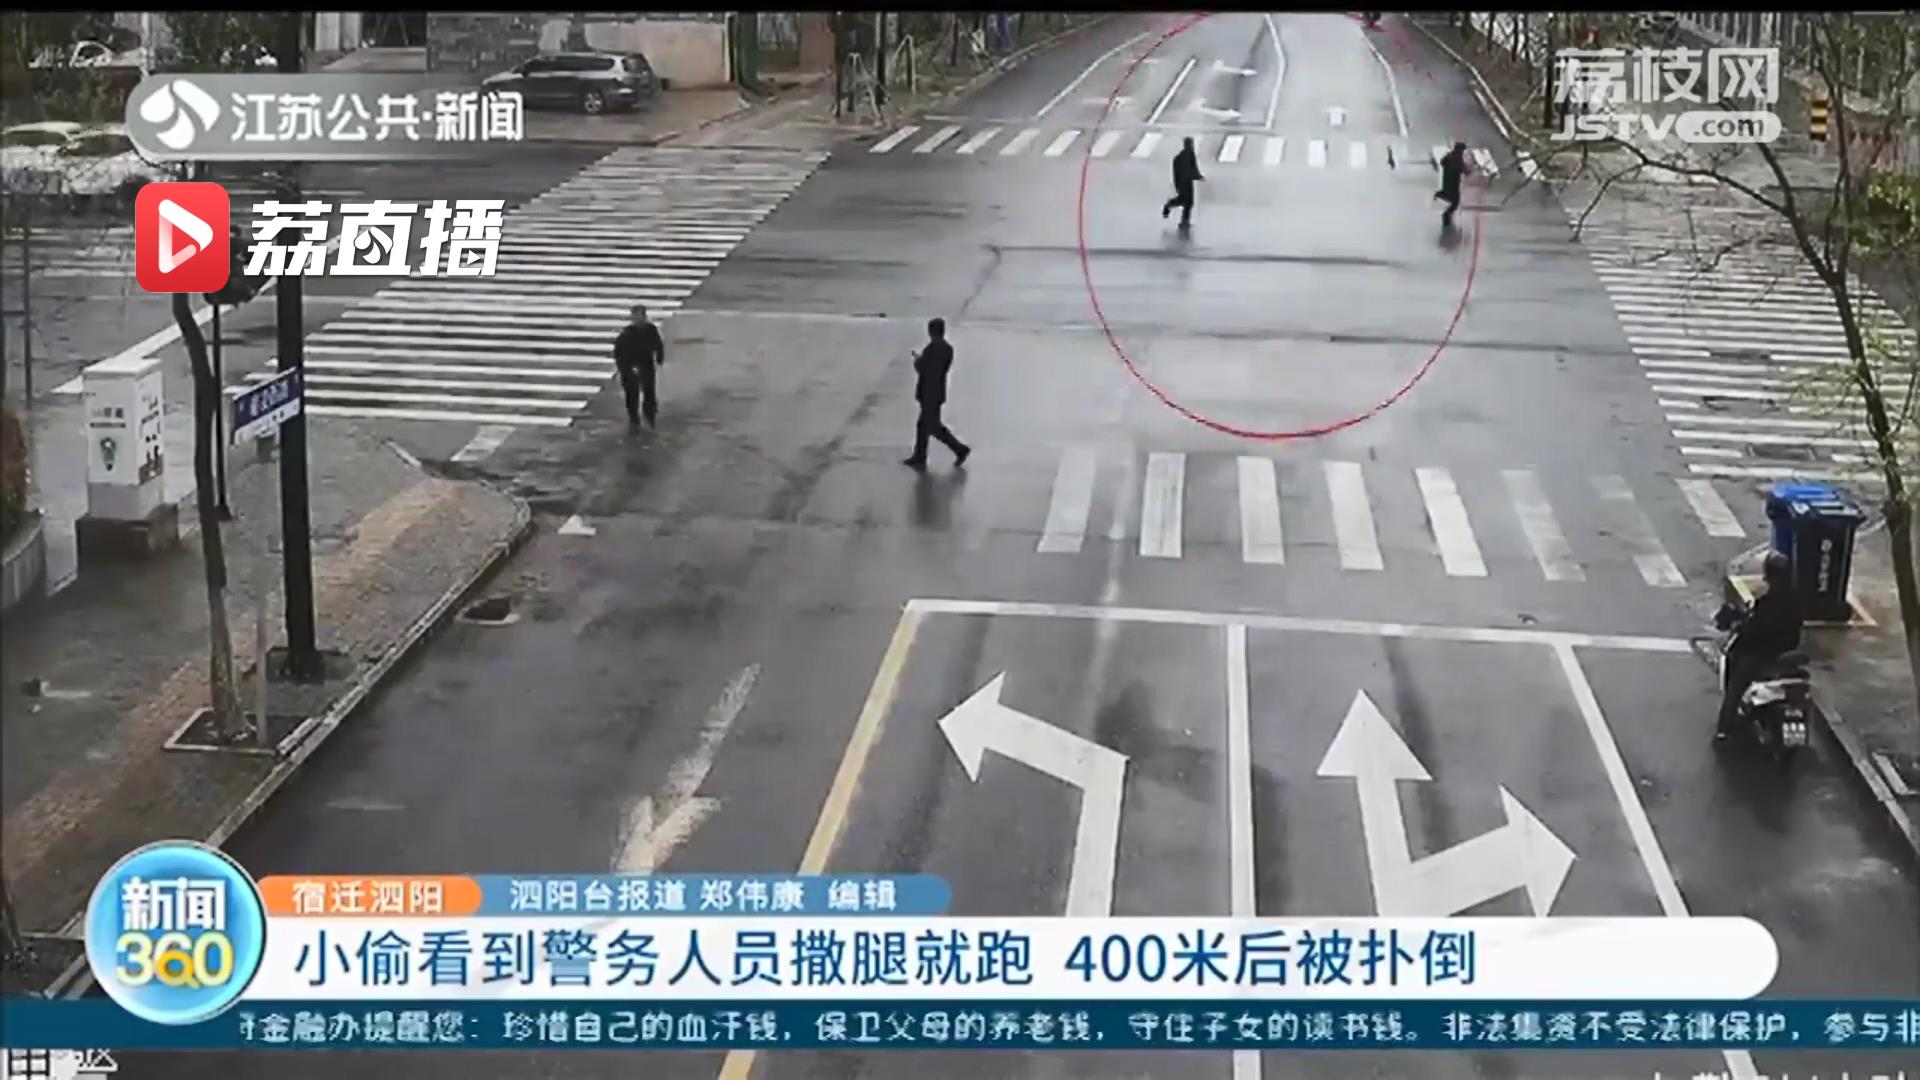 小偷路上偶遇警务人员撒腿就跑 400米后被扑倒